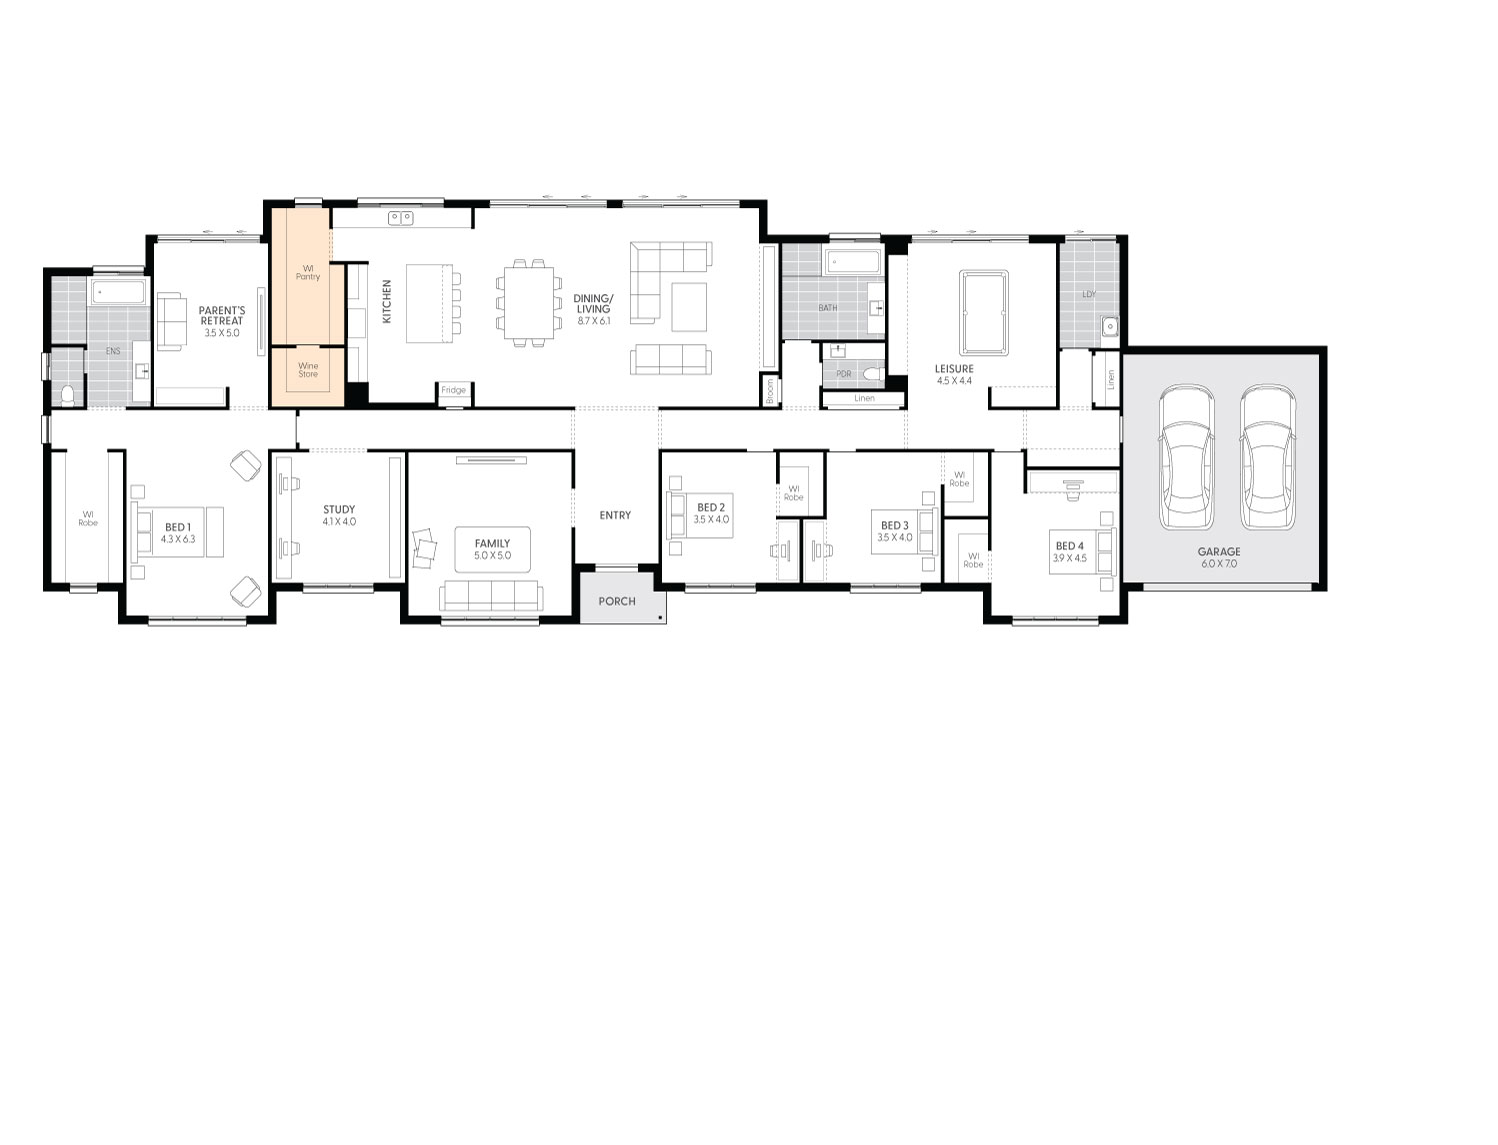 Sanford-47-floor-plan-WINE-ROOM-TO-KITCHEN-LHS_1.jpg 